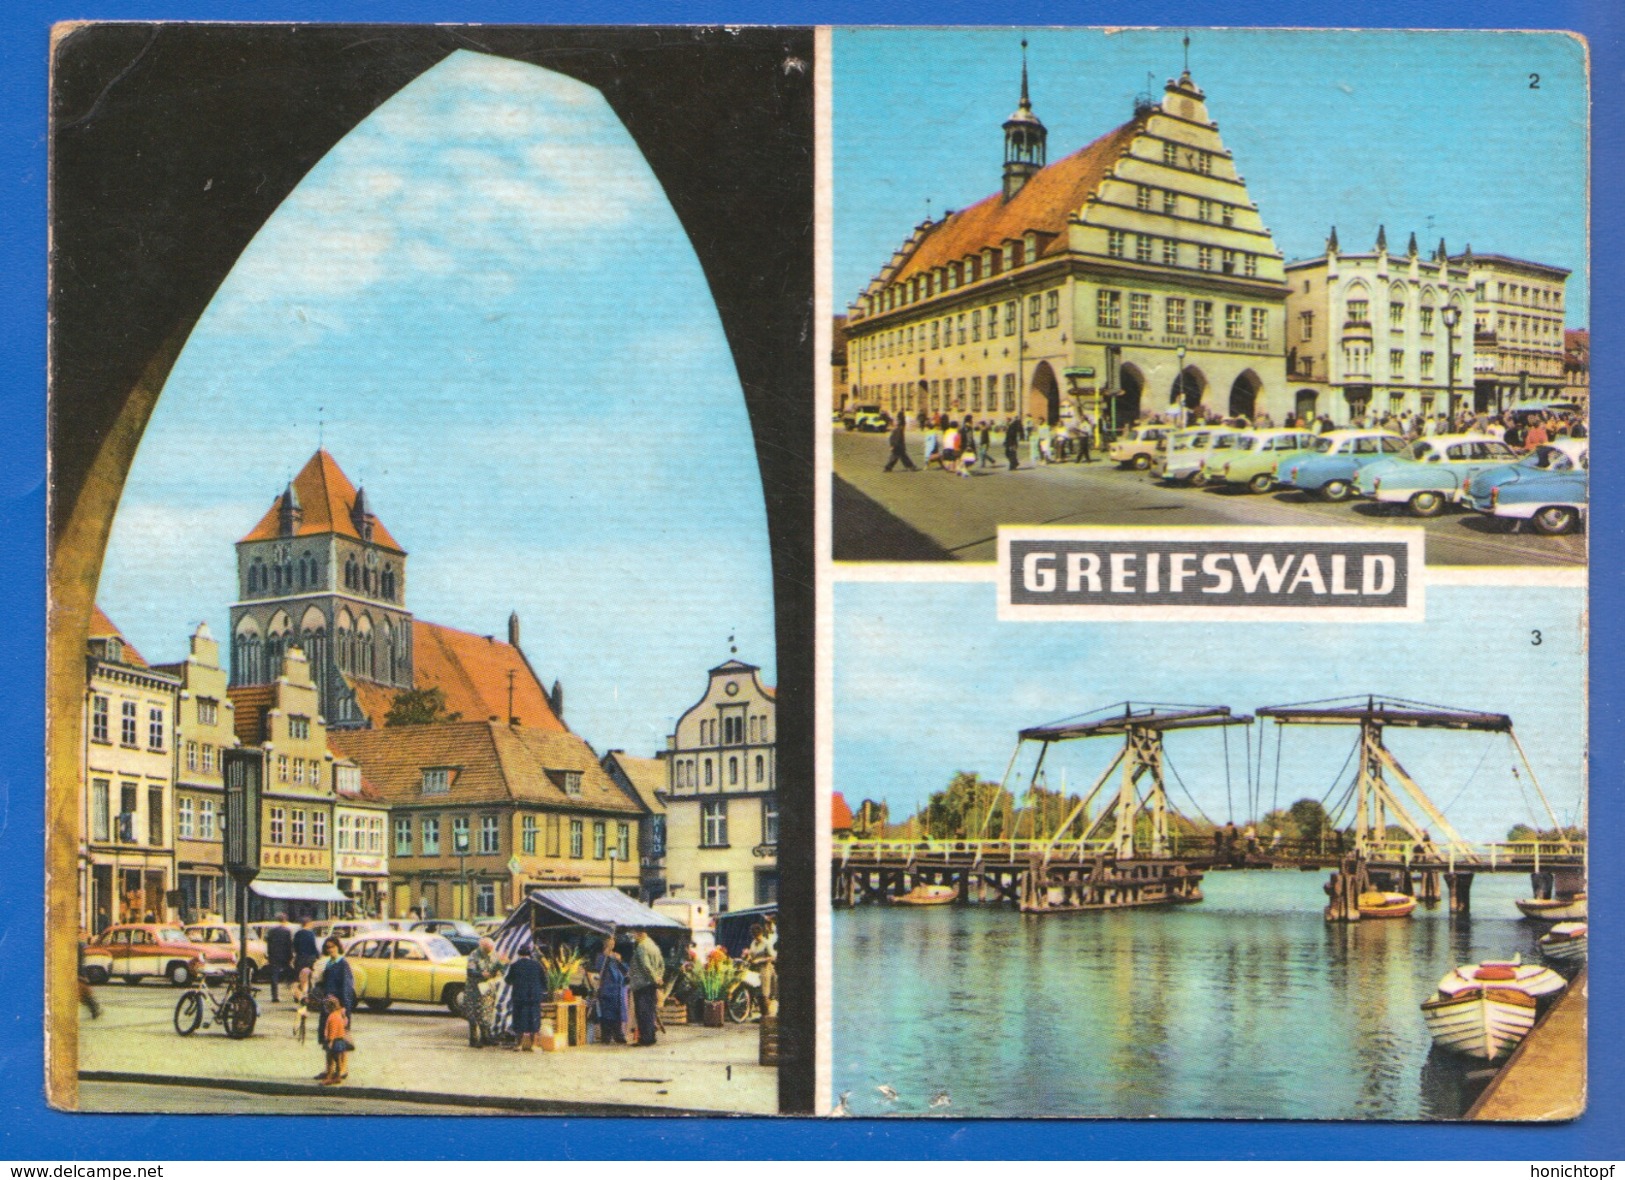 Deutschland; Greifswald; Multibildkarte Mit Platz Der Freundschaft; Bild1 - Greifswald